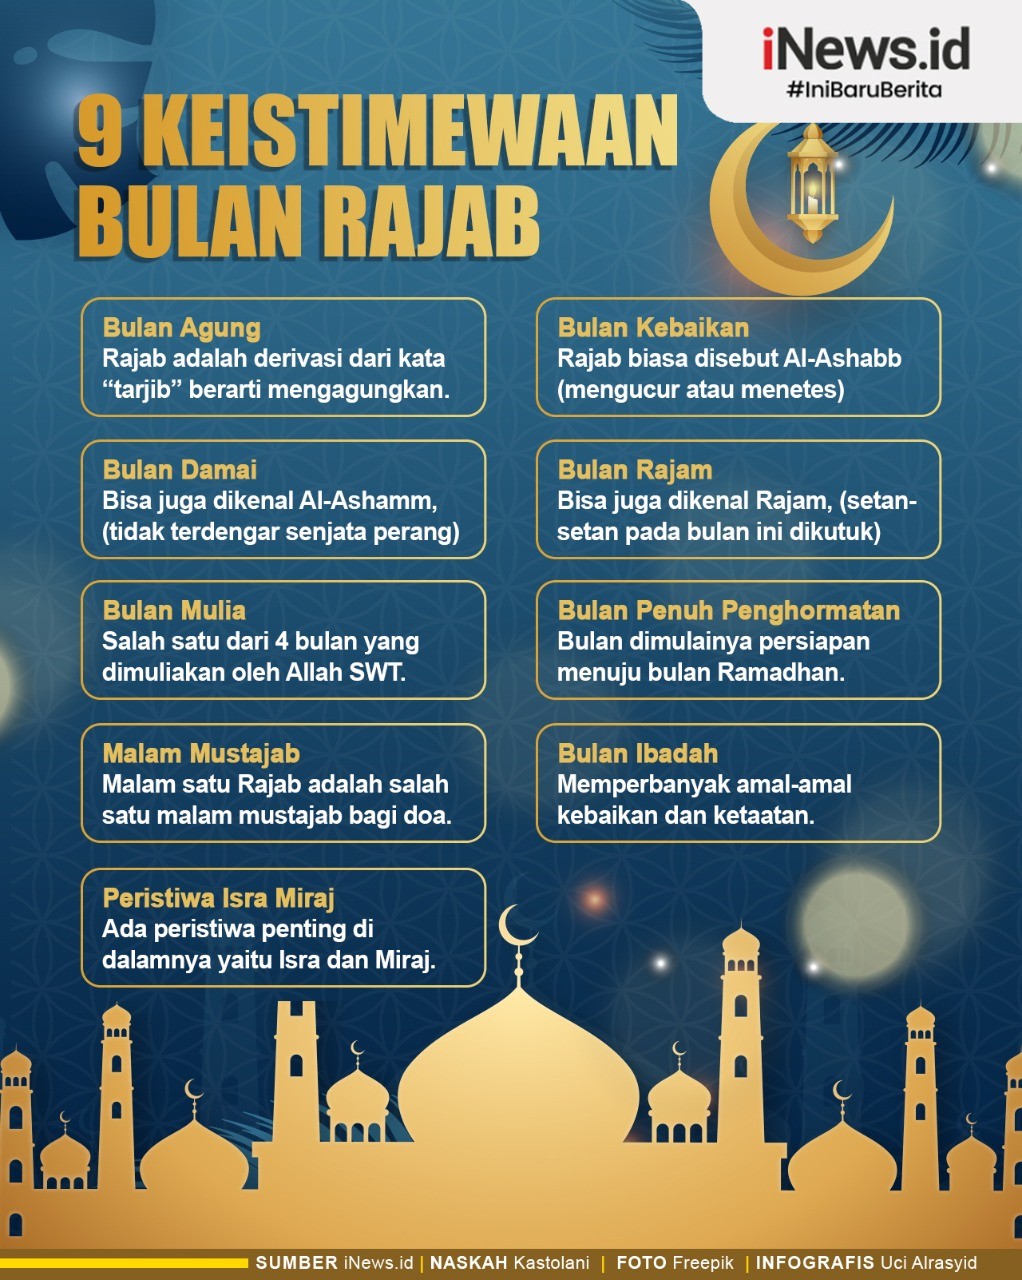 9 Keistimewaan Bulan Rajab dalam Islam, Ada Malam Mustajab hingga Peristiwa Isra Miraj